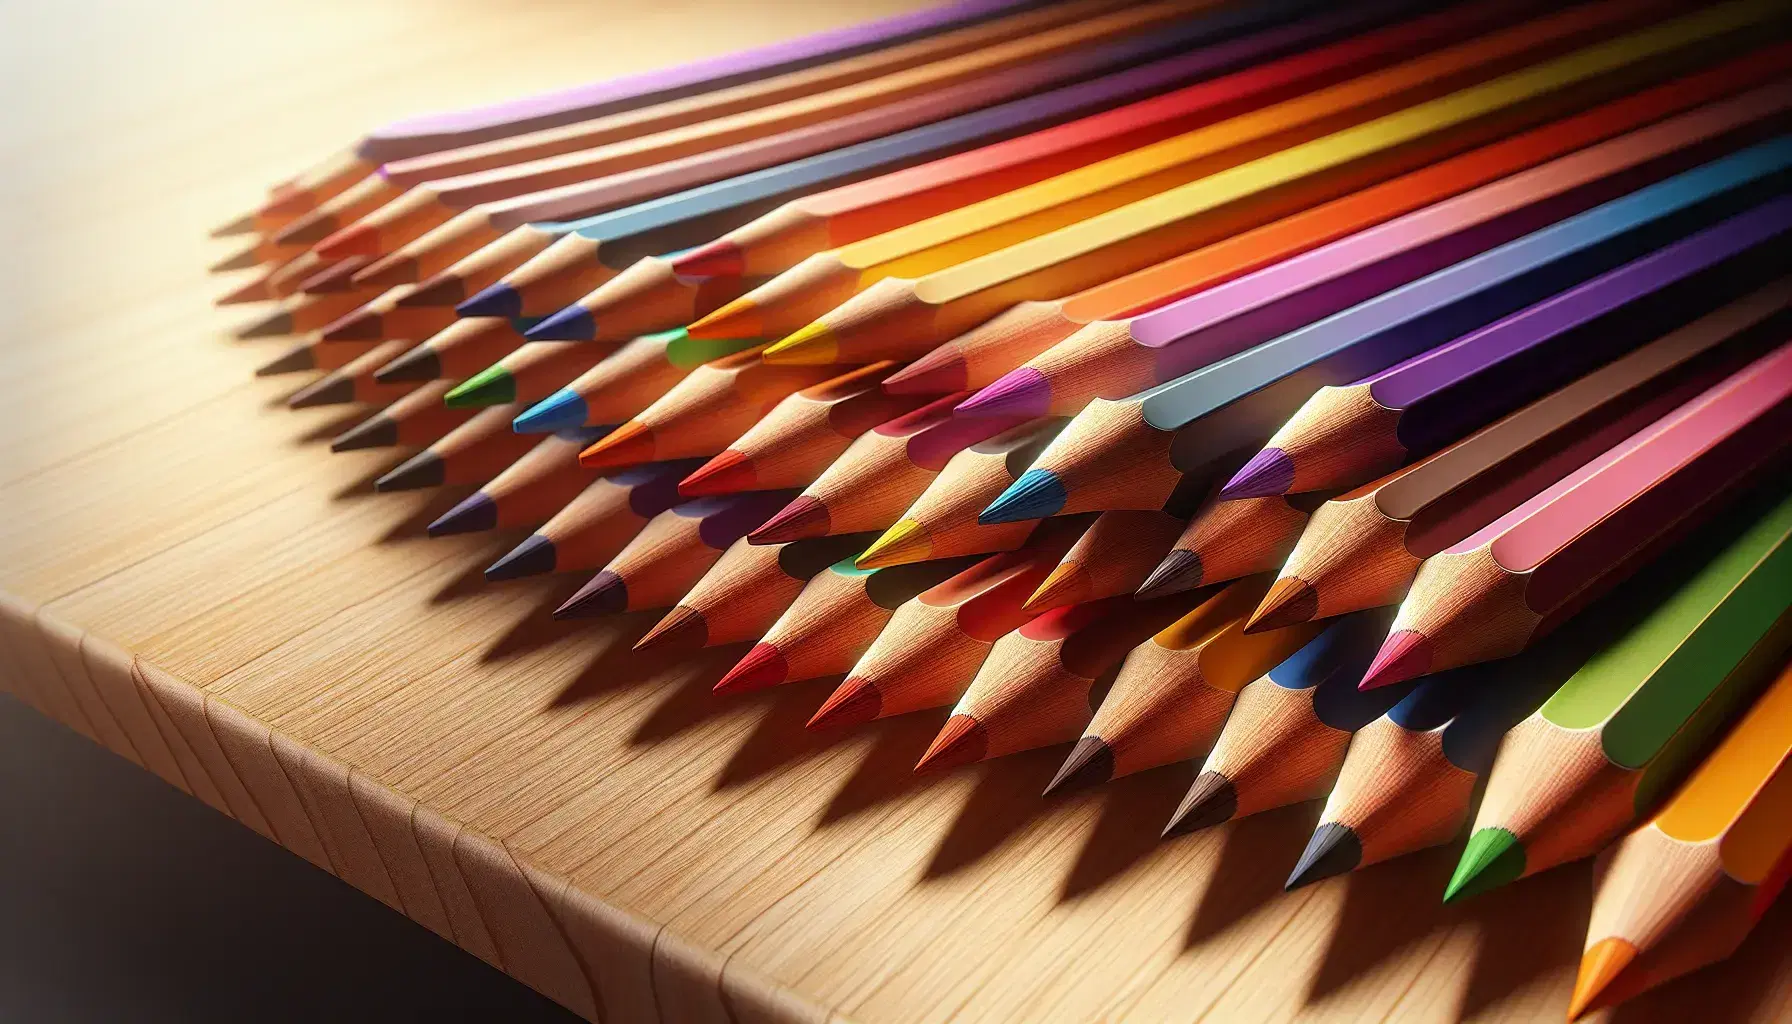 Lápices de colores con puntas afiladas dispuestos en abanico sobre superficie de madera clara, mostrando un espectro de rojo a violeta.